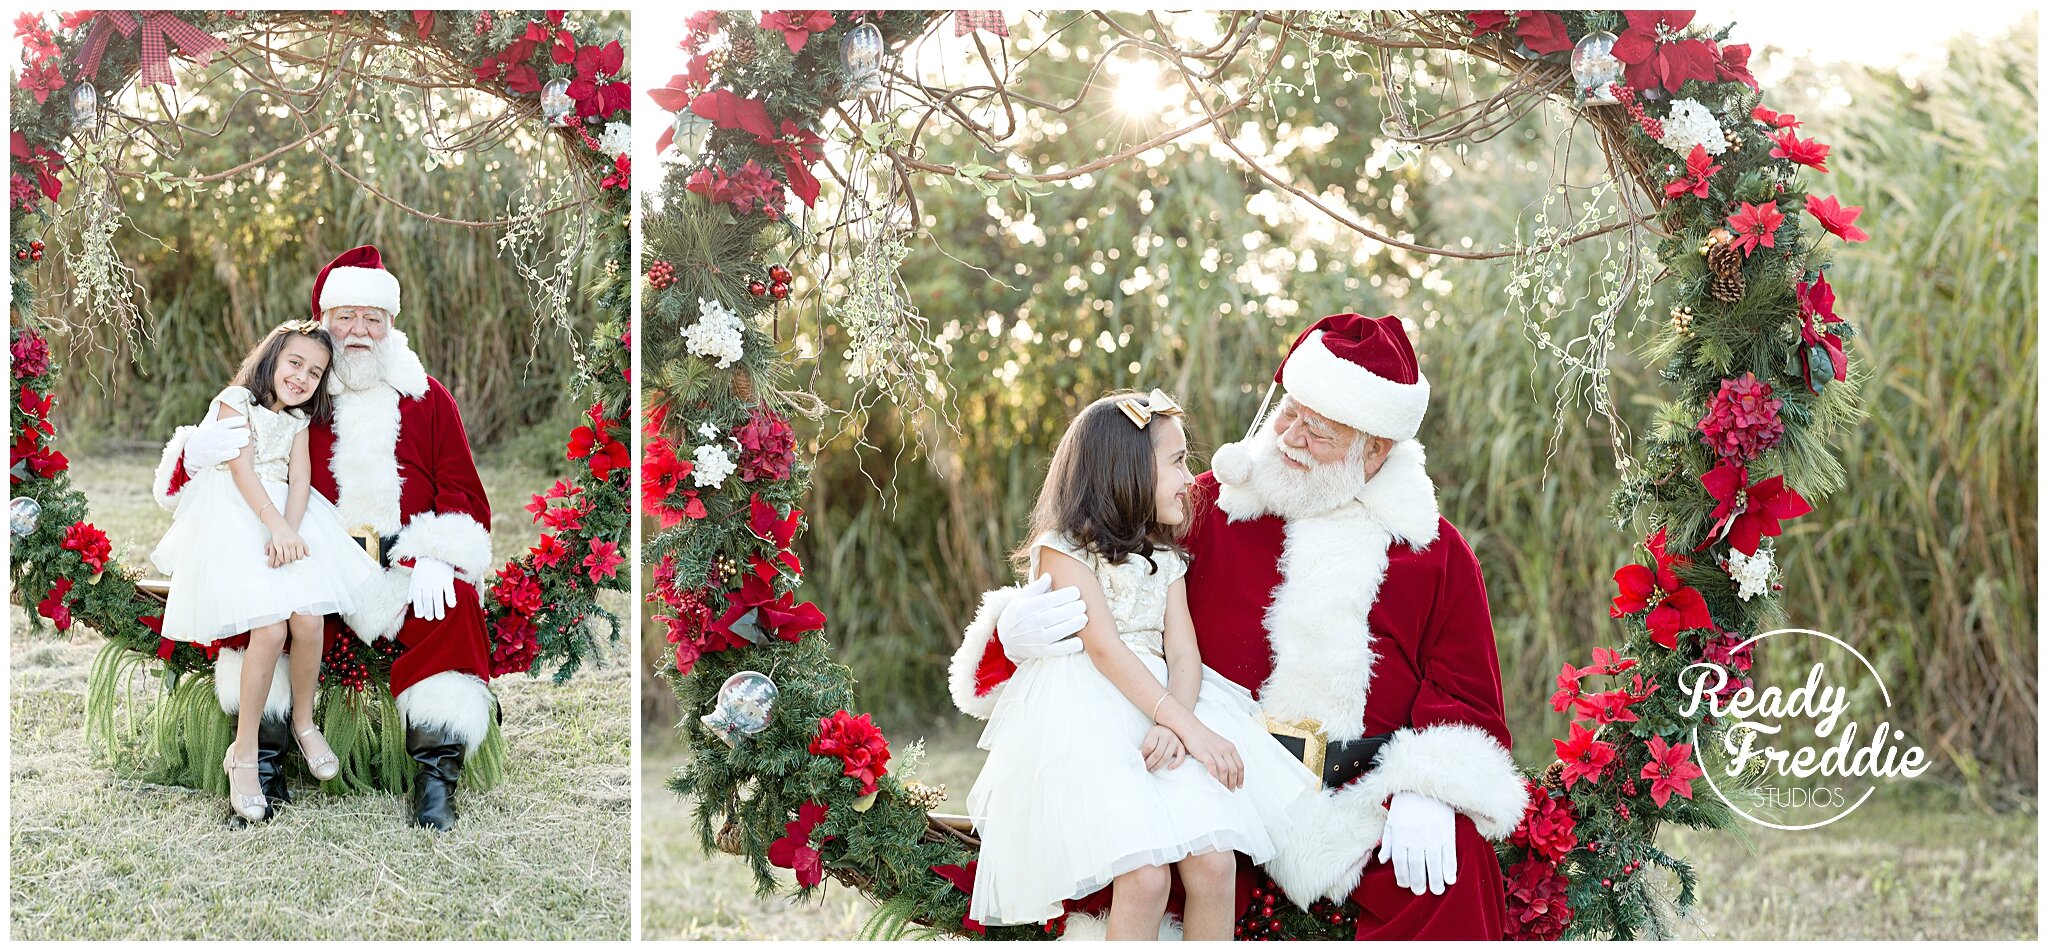 Outdoor Santa photos with giant wreath for Christmas | Ready Freddie Studios Miami, FL